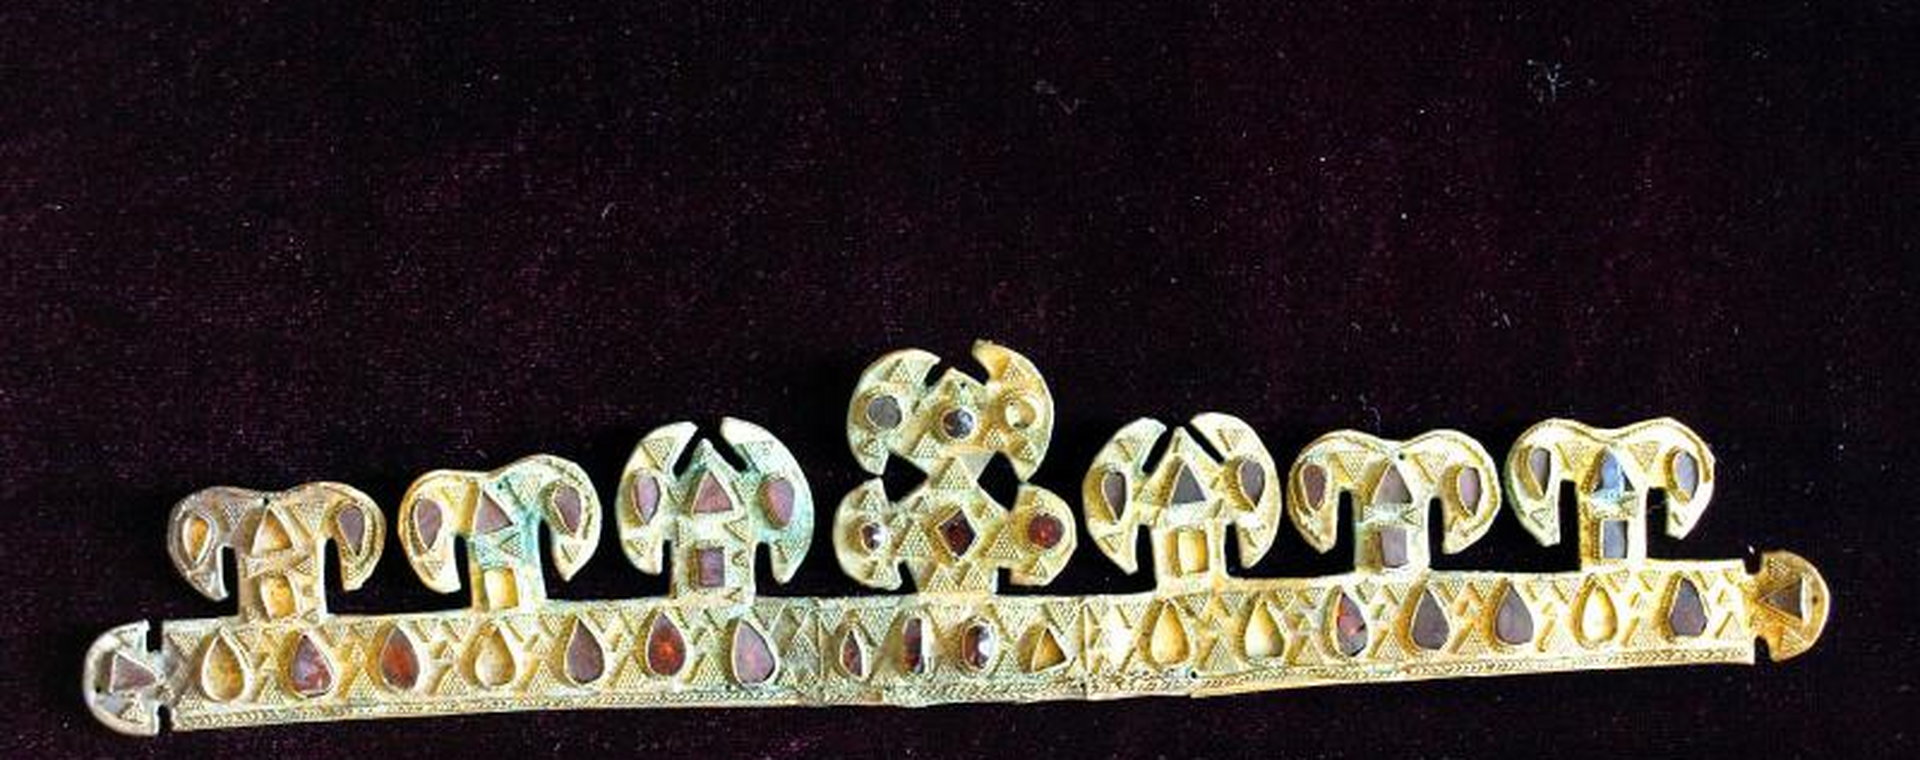 1500-letnia złota tiara, inkrustowana drogocennymi kamieniami, jeden z najcenniejszych na świecie artefaktów z czasu panowania Huna Attyli, wystawiona w muzeum w Melitopolu, Ukraina, listopad 2020 r. 